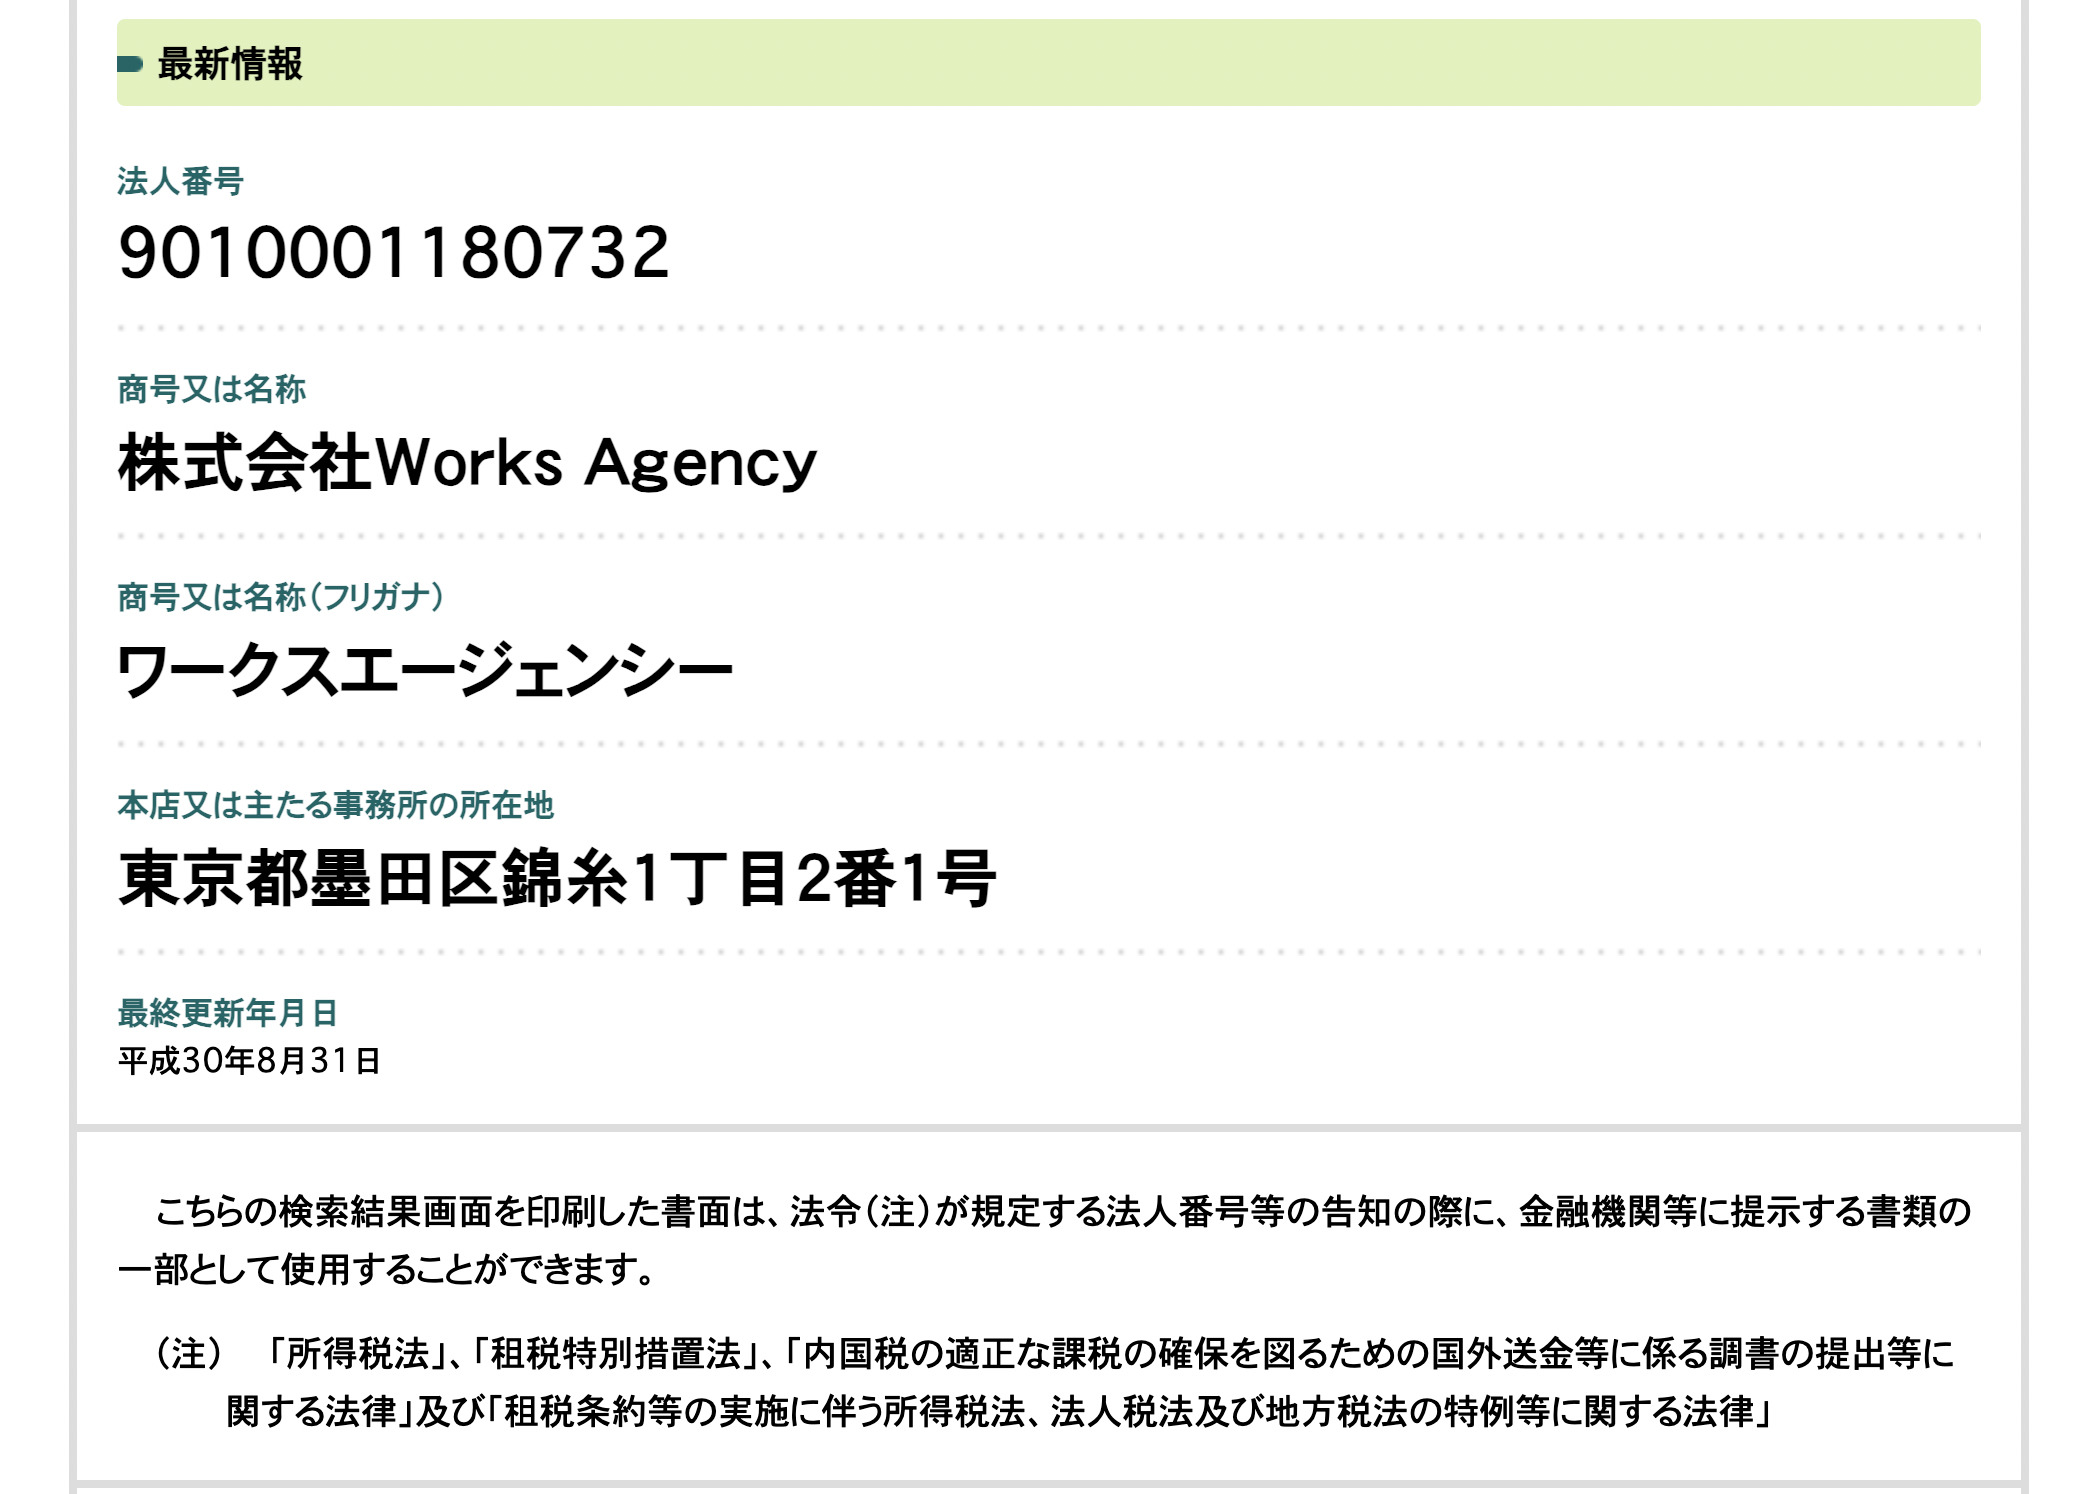 株式会社Works Agency法人番号公表サイト